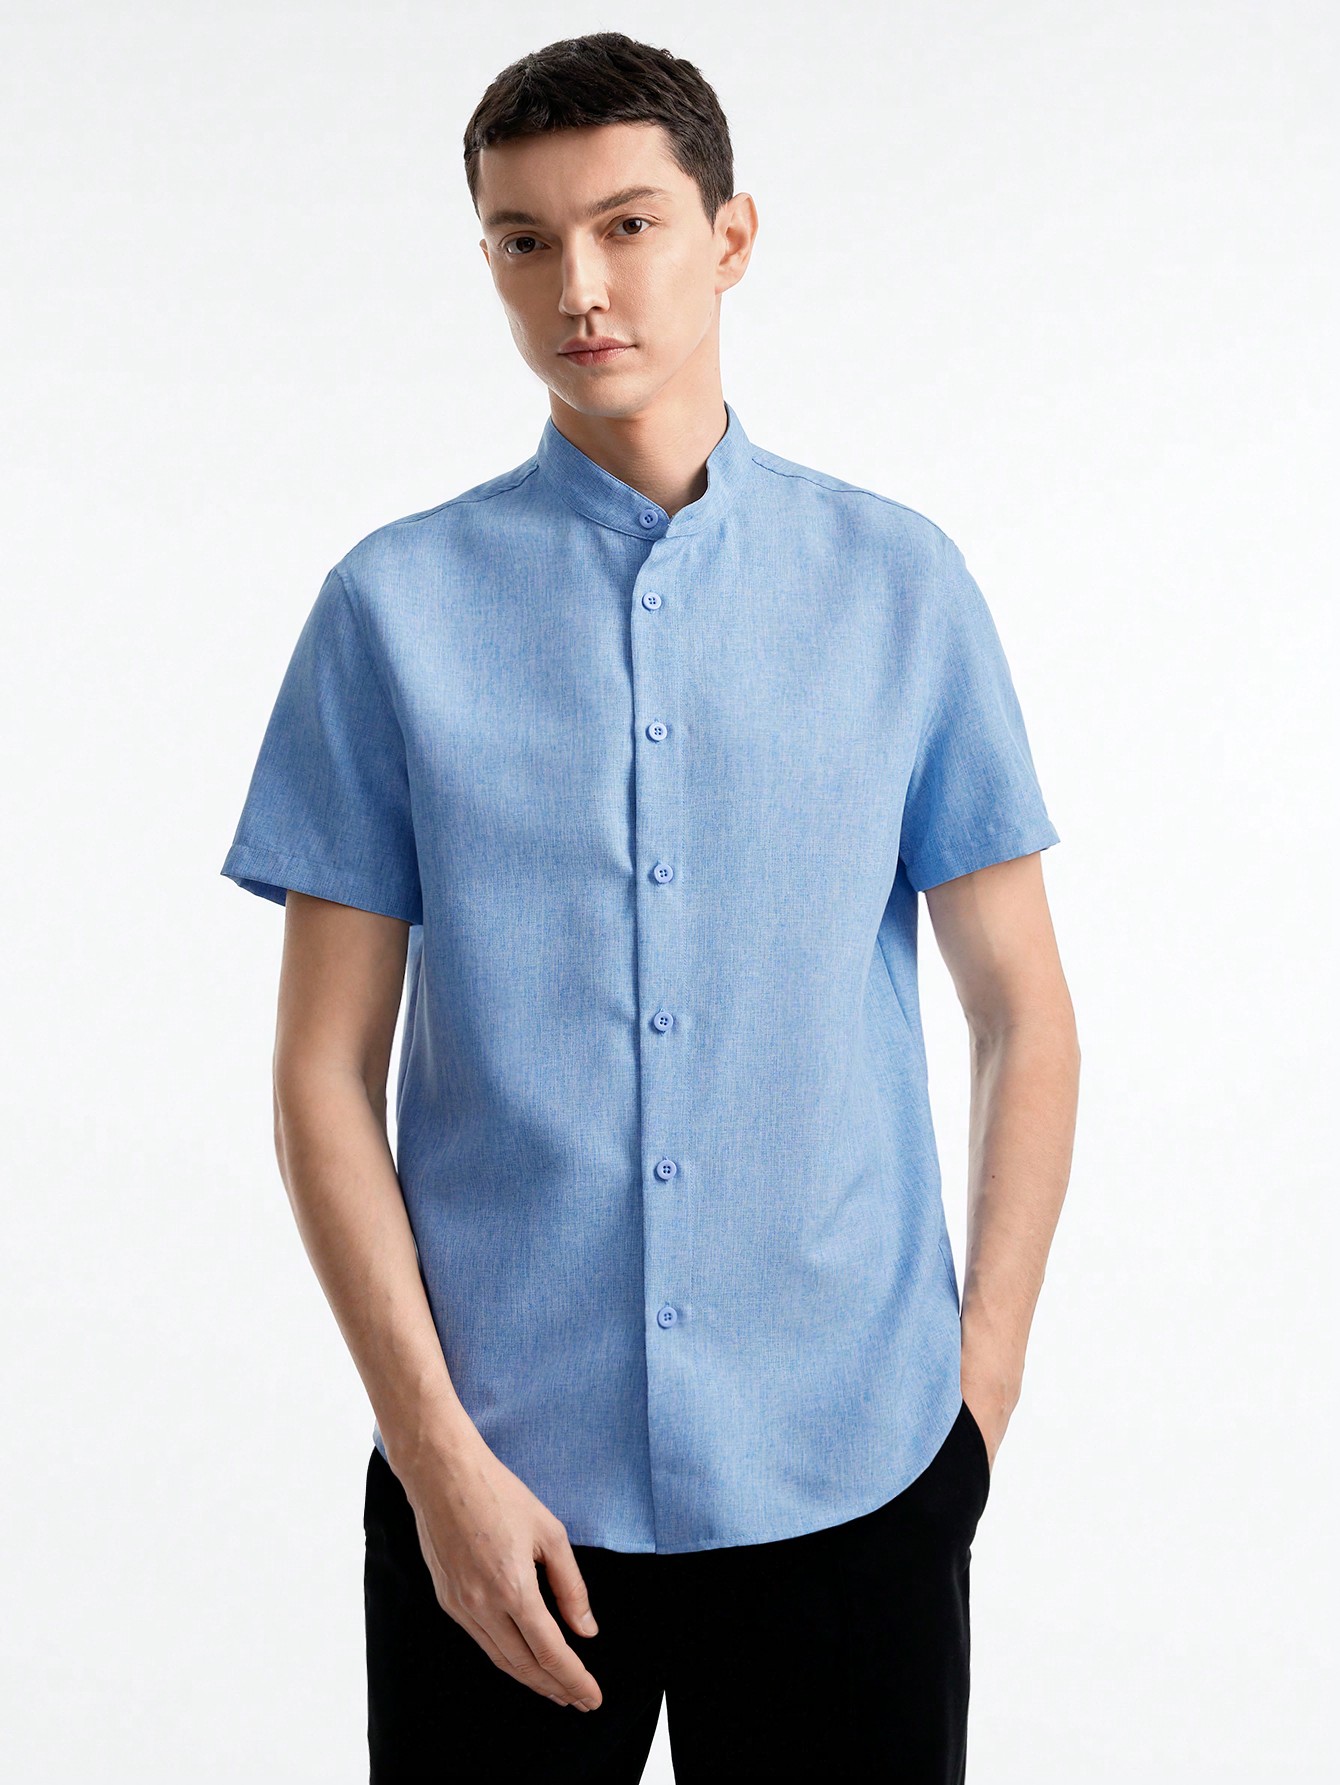 Мужская тканая рубашка с короткими рукавами Manfinity Basics, голубые цена и фото